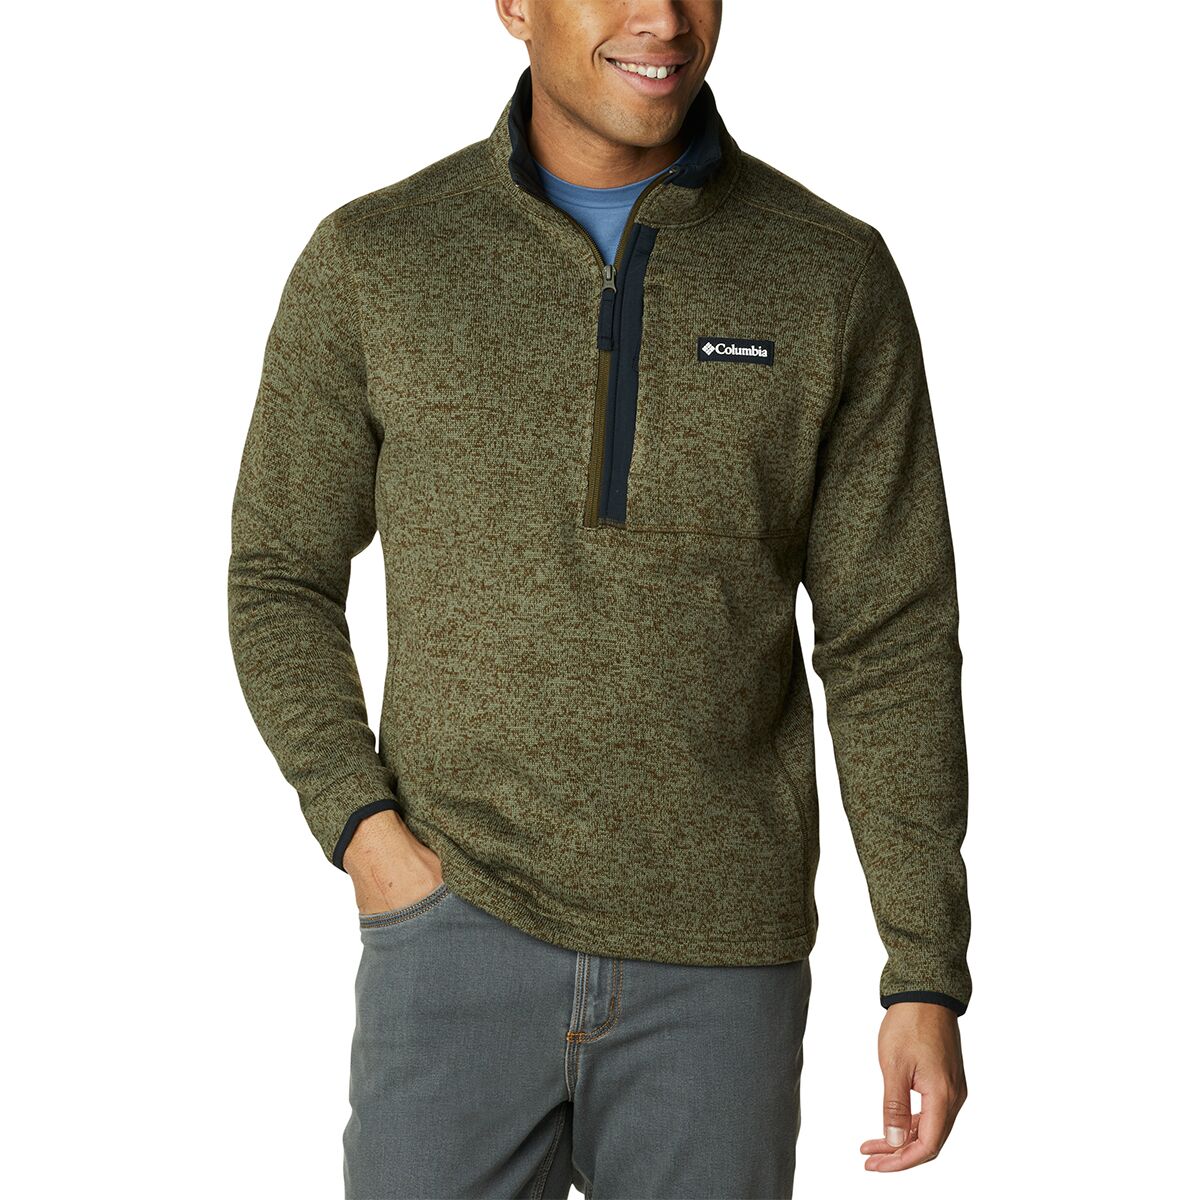 Columbia Sweater Weather 1/2-Zip Jacket - Men's